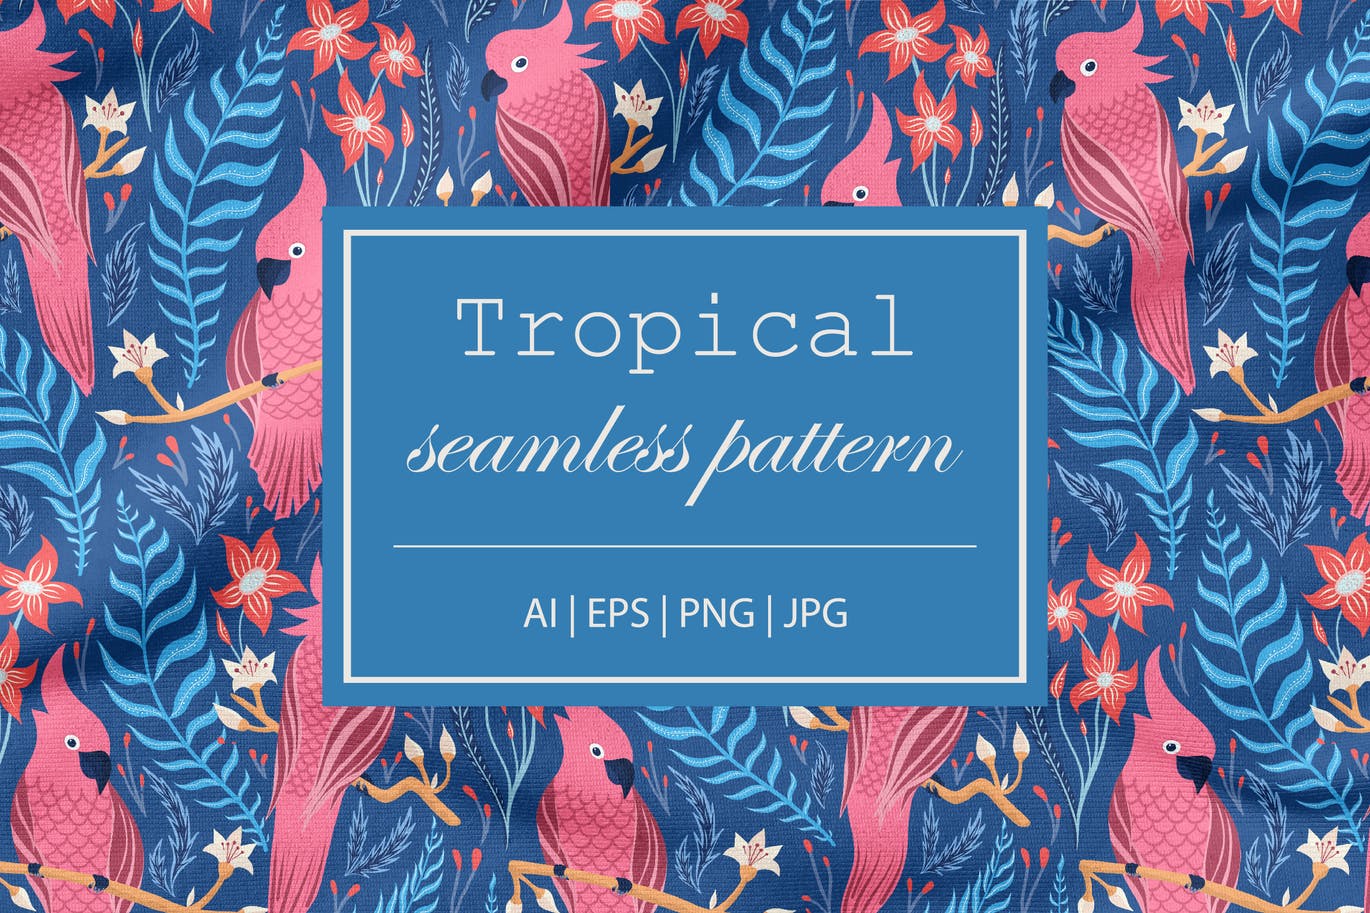 热带&鸟类无缝图案素材 Seamless Tropical Pattern with Birds APP UI 第1张